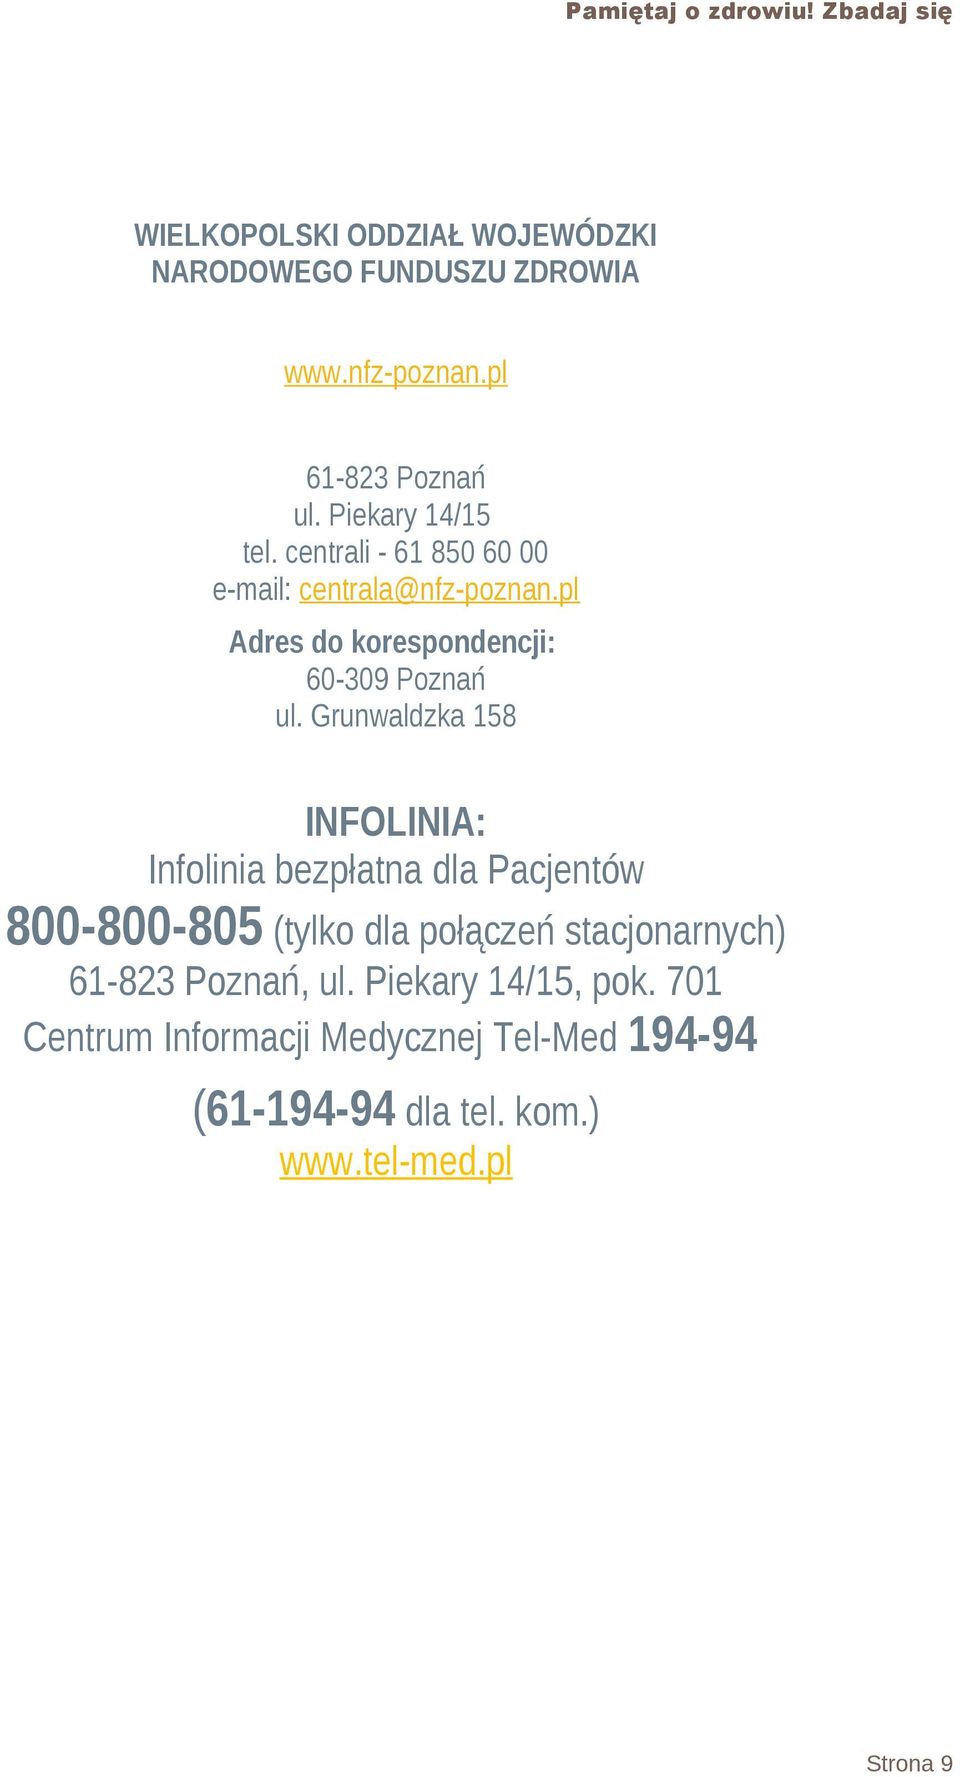 Grunwaldzka 158 INFOLINIA: Infolinia bezpłatna dla Pacjentów 800-800-805 (tylko dla połączeń stacjonarnych) 61-823